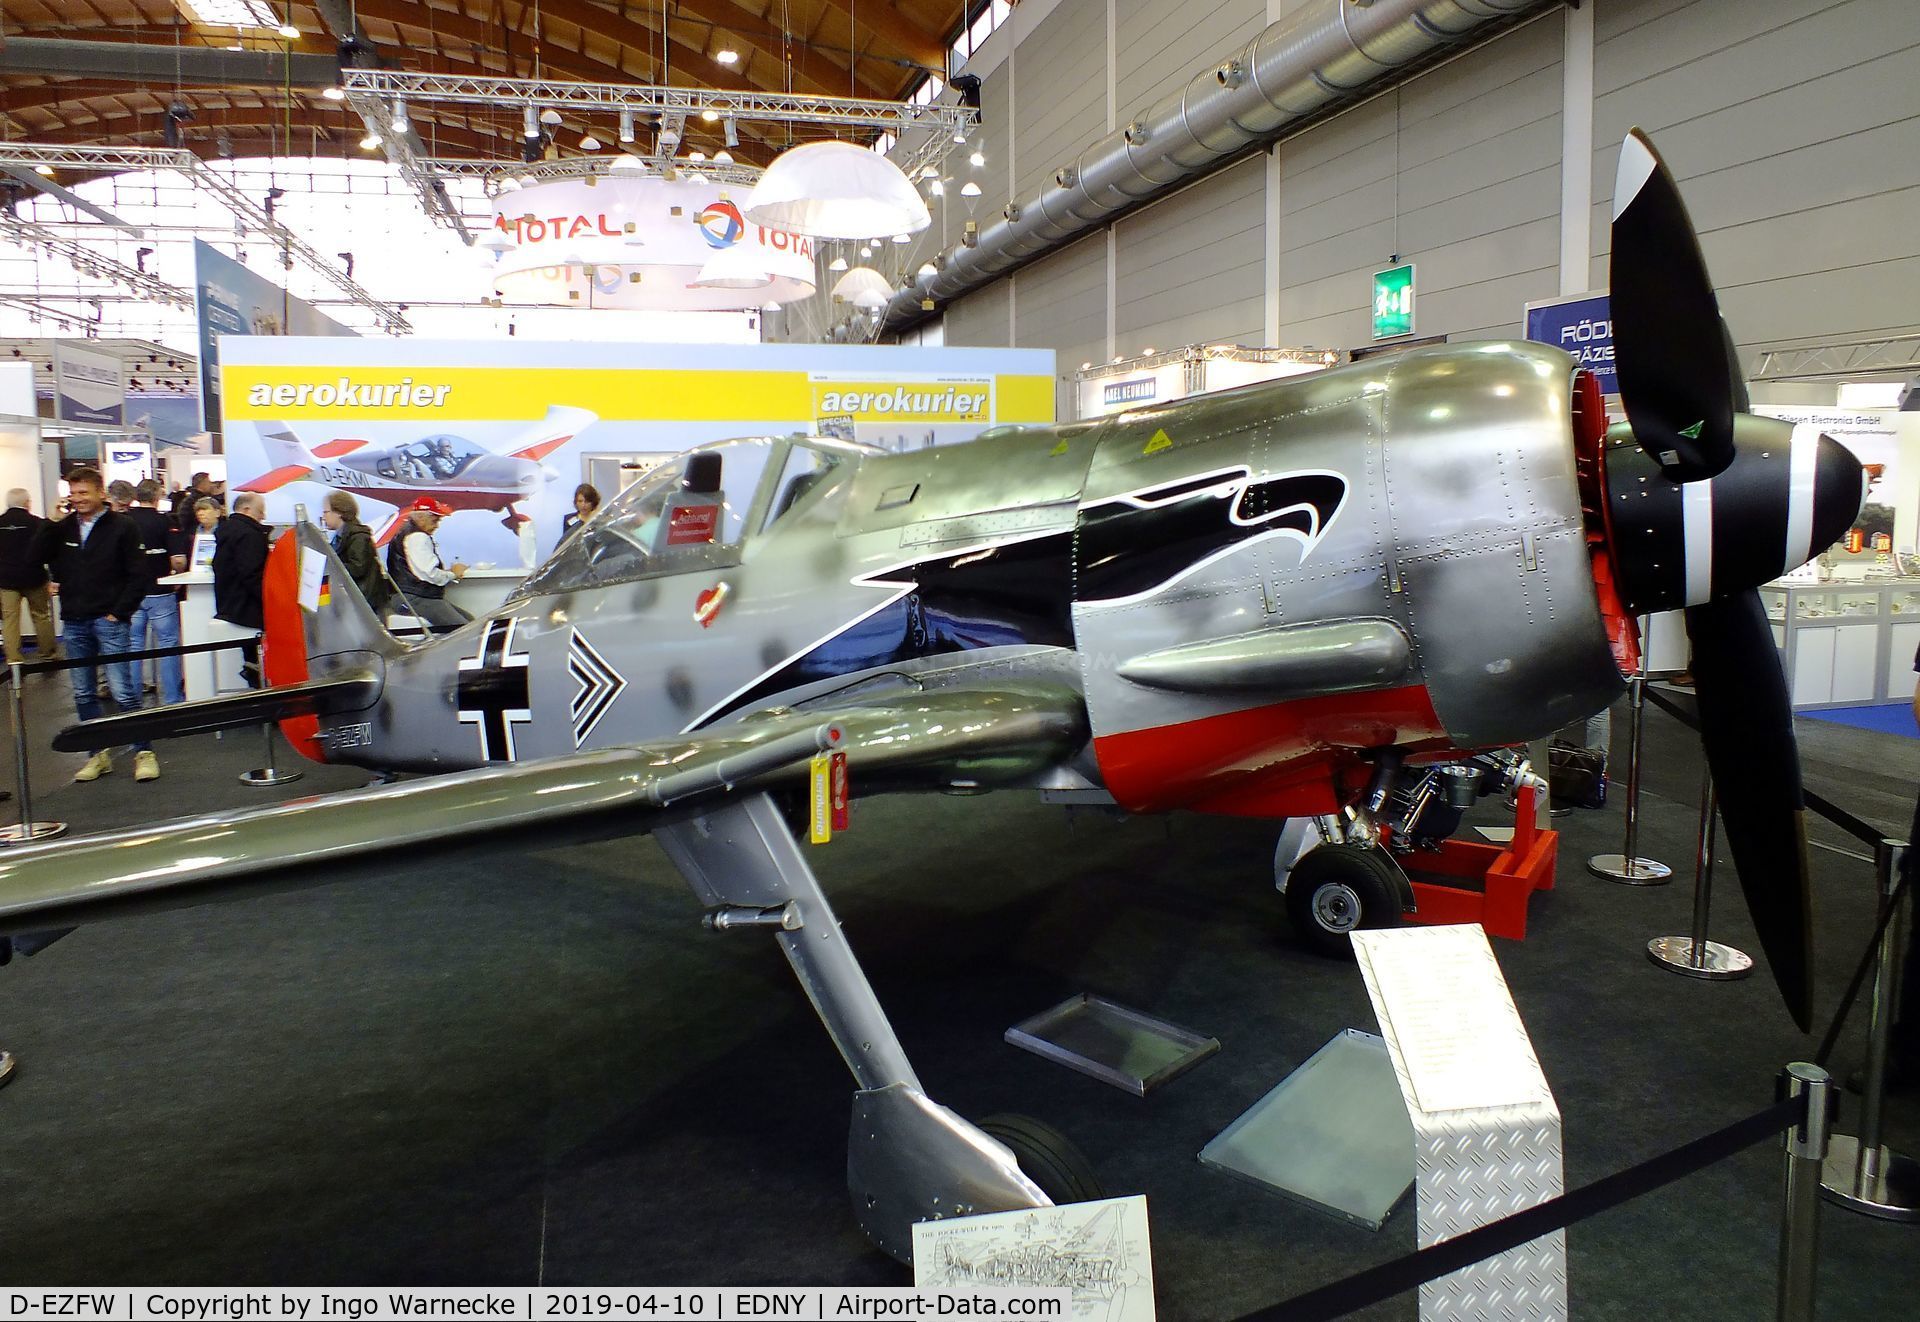 D-EZFW, Jurca MJ-8 Fw.190 C/N 1656, Jurca MJ-8 Focke-Wulf Fw 190A 2/3-scale replica at the AERO 2019, Friedrichshafen